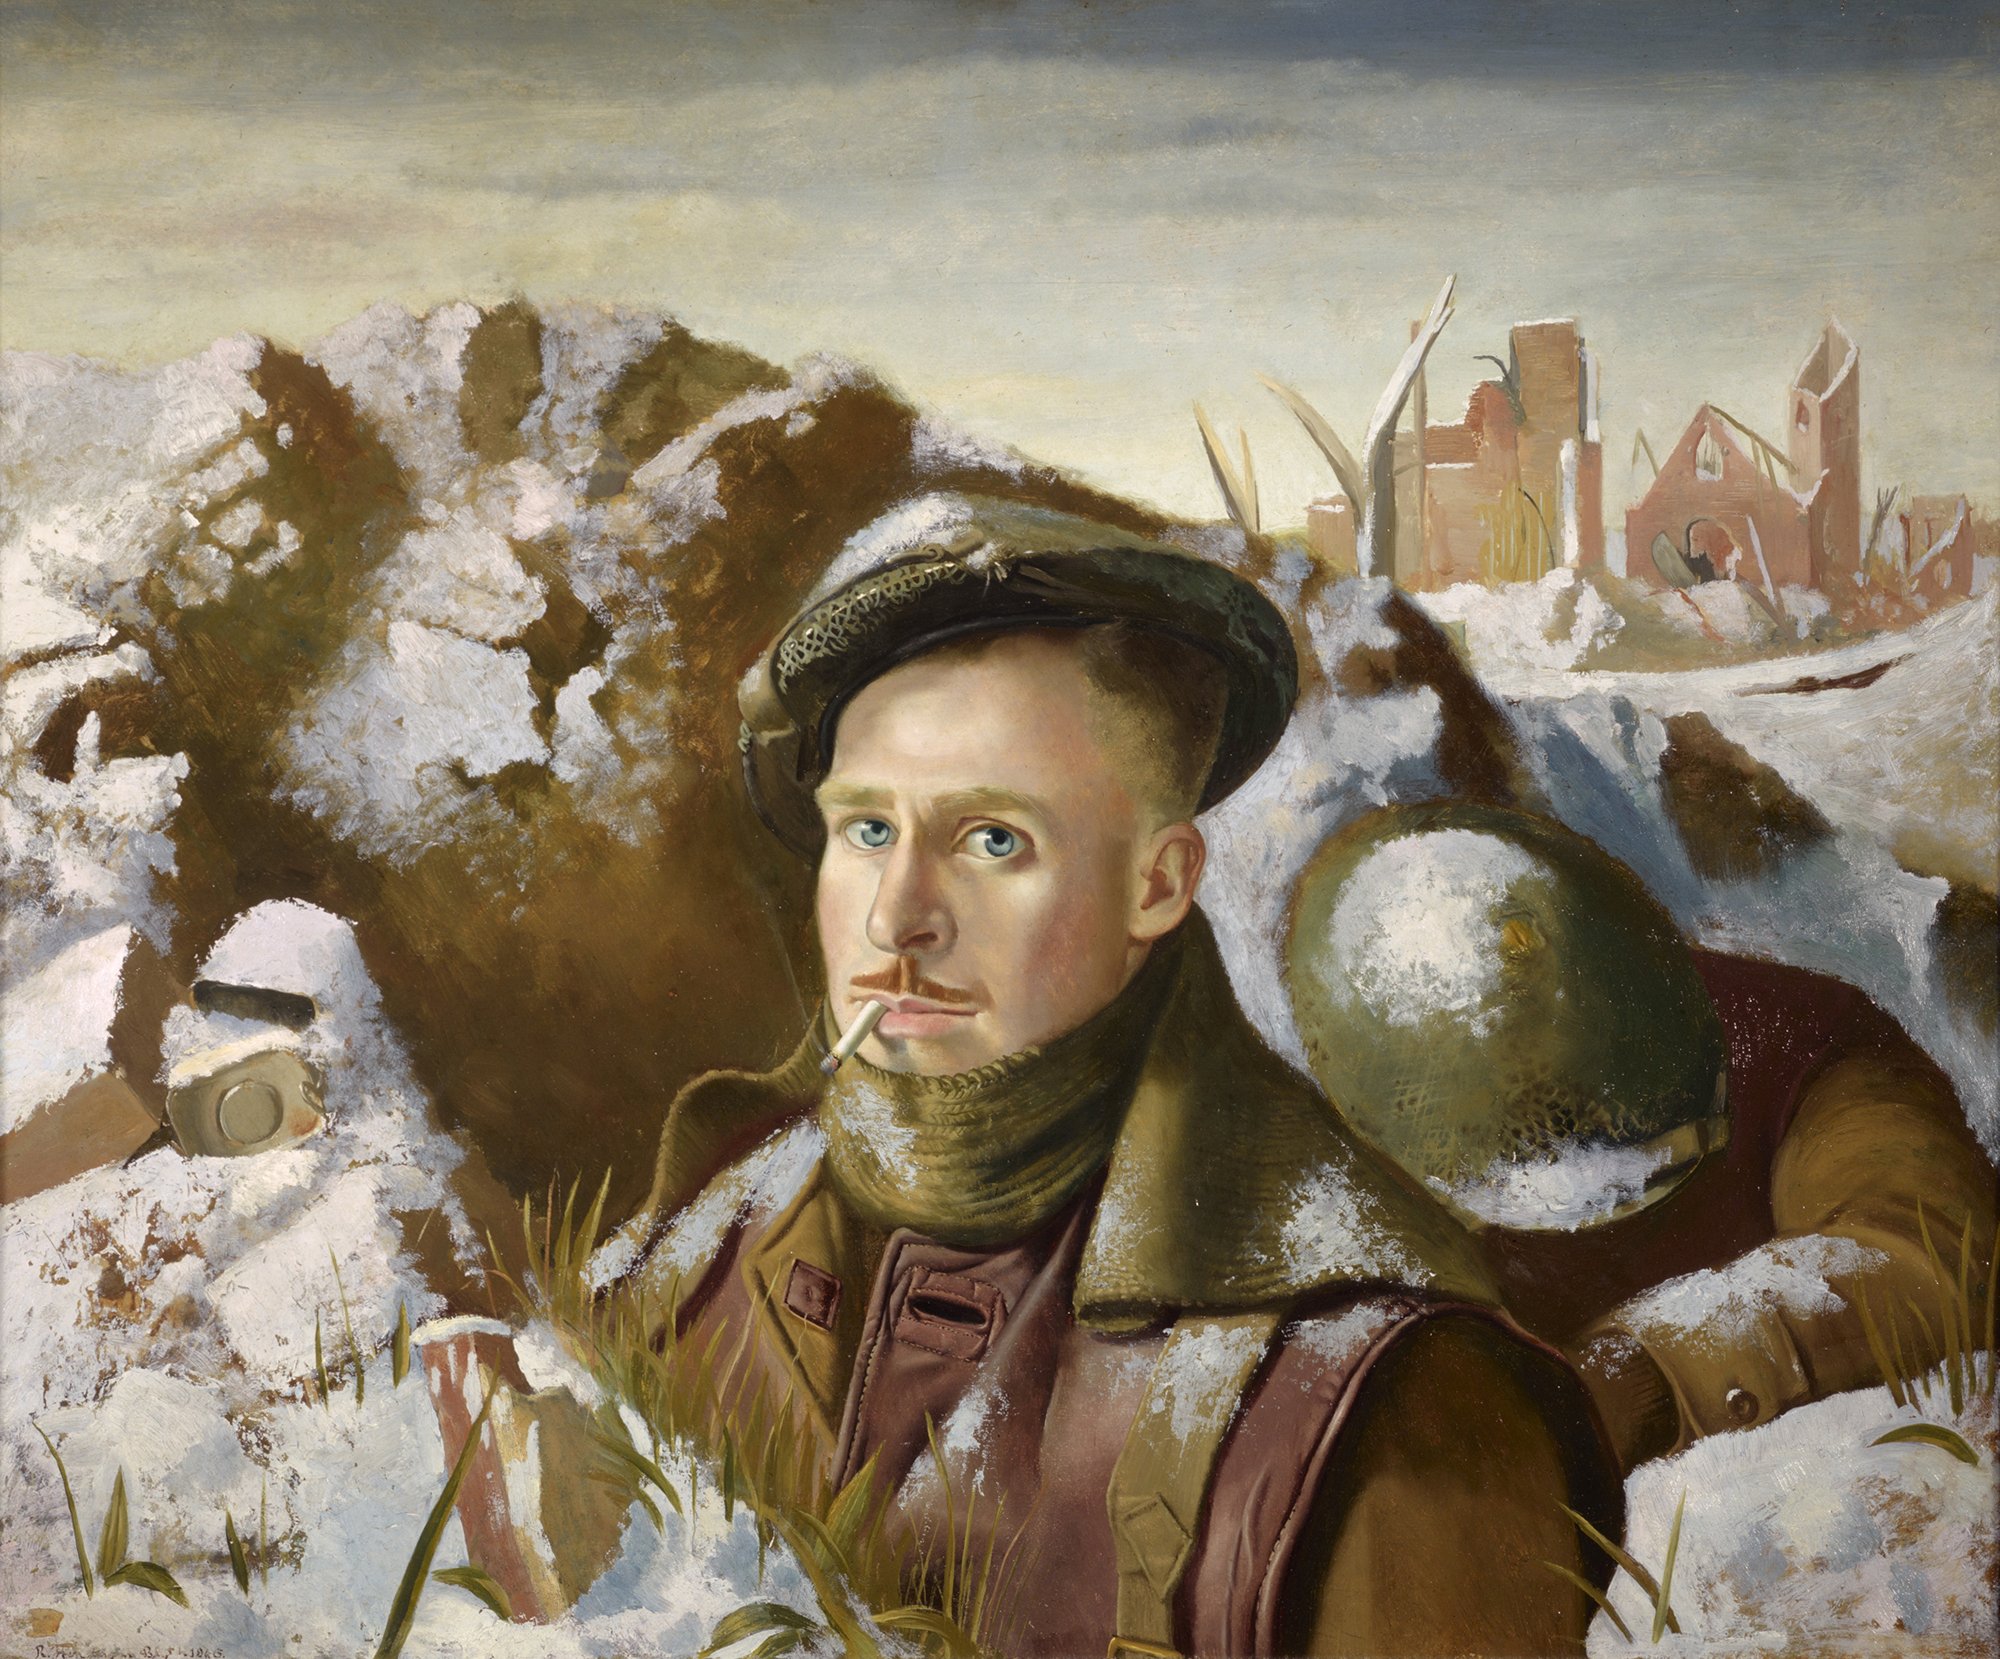 Abbildung des Werks "Unsichere Existenz" von Robert Henderson Blyth aus dem Jahr 1946. Der Künstler malte sich als Soldat in einem Schützengraben. Hinter ihm sieht man eine zerstörte Stadt. Alles ist leicht mit Schnee bedeckt.